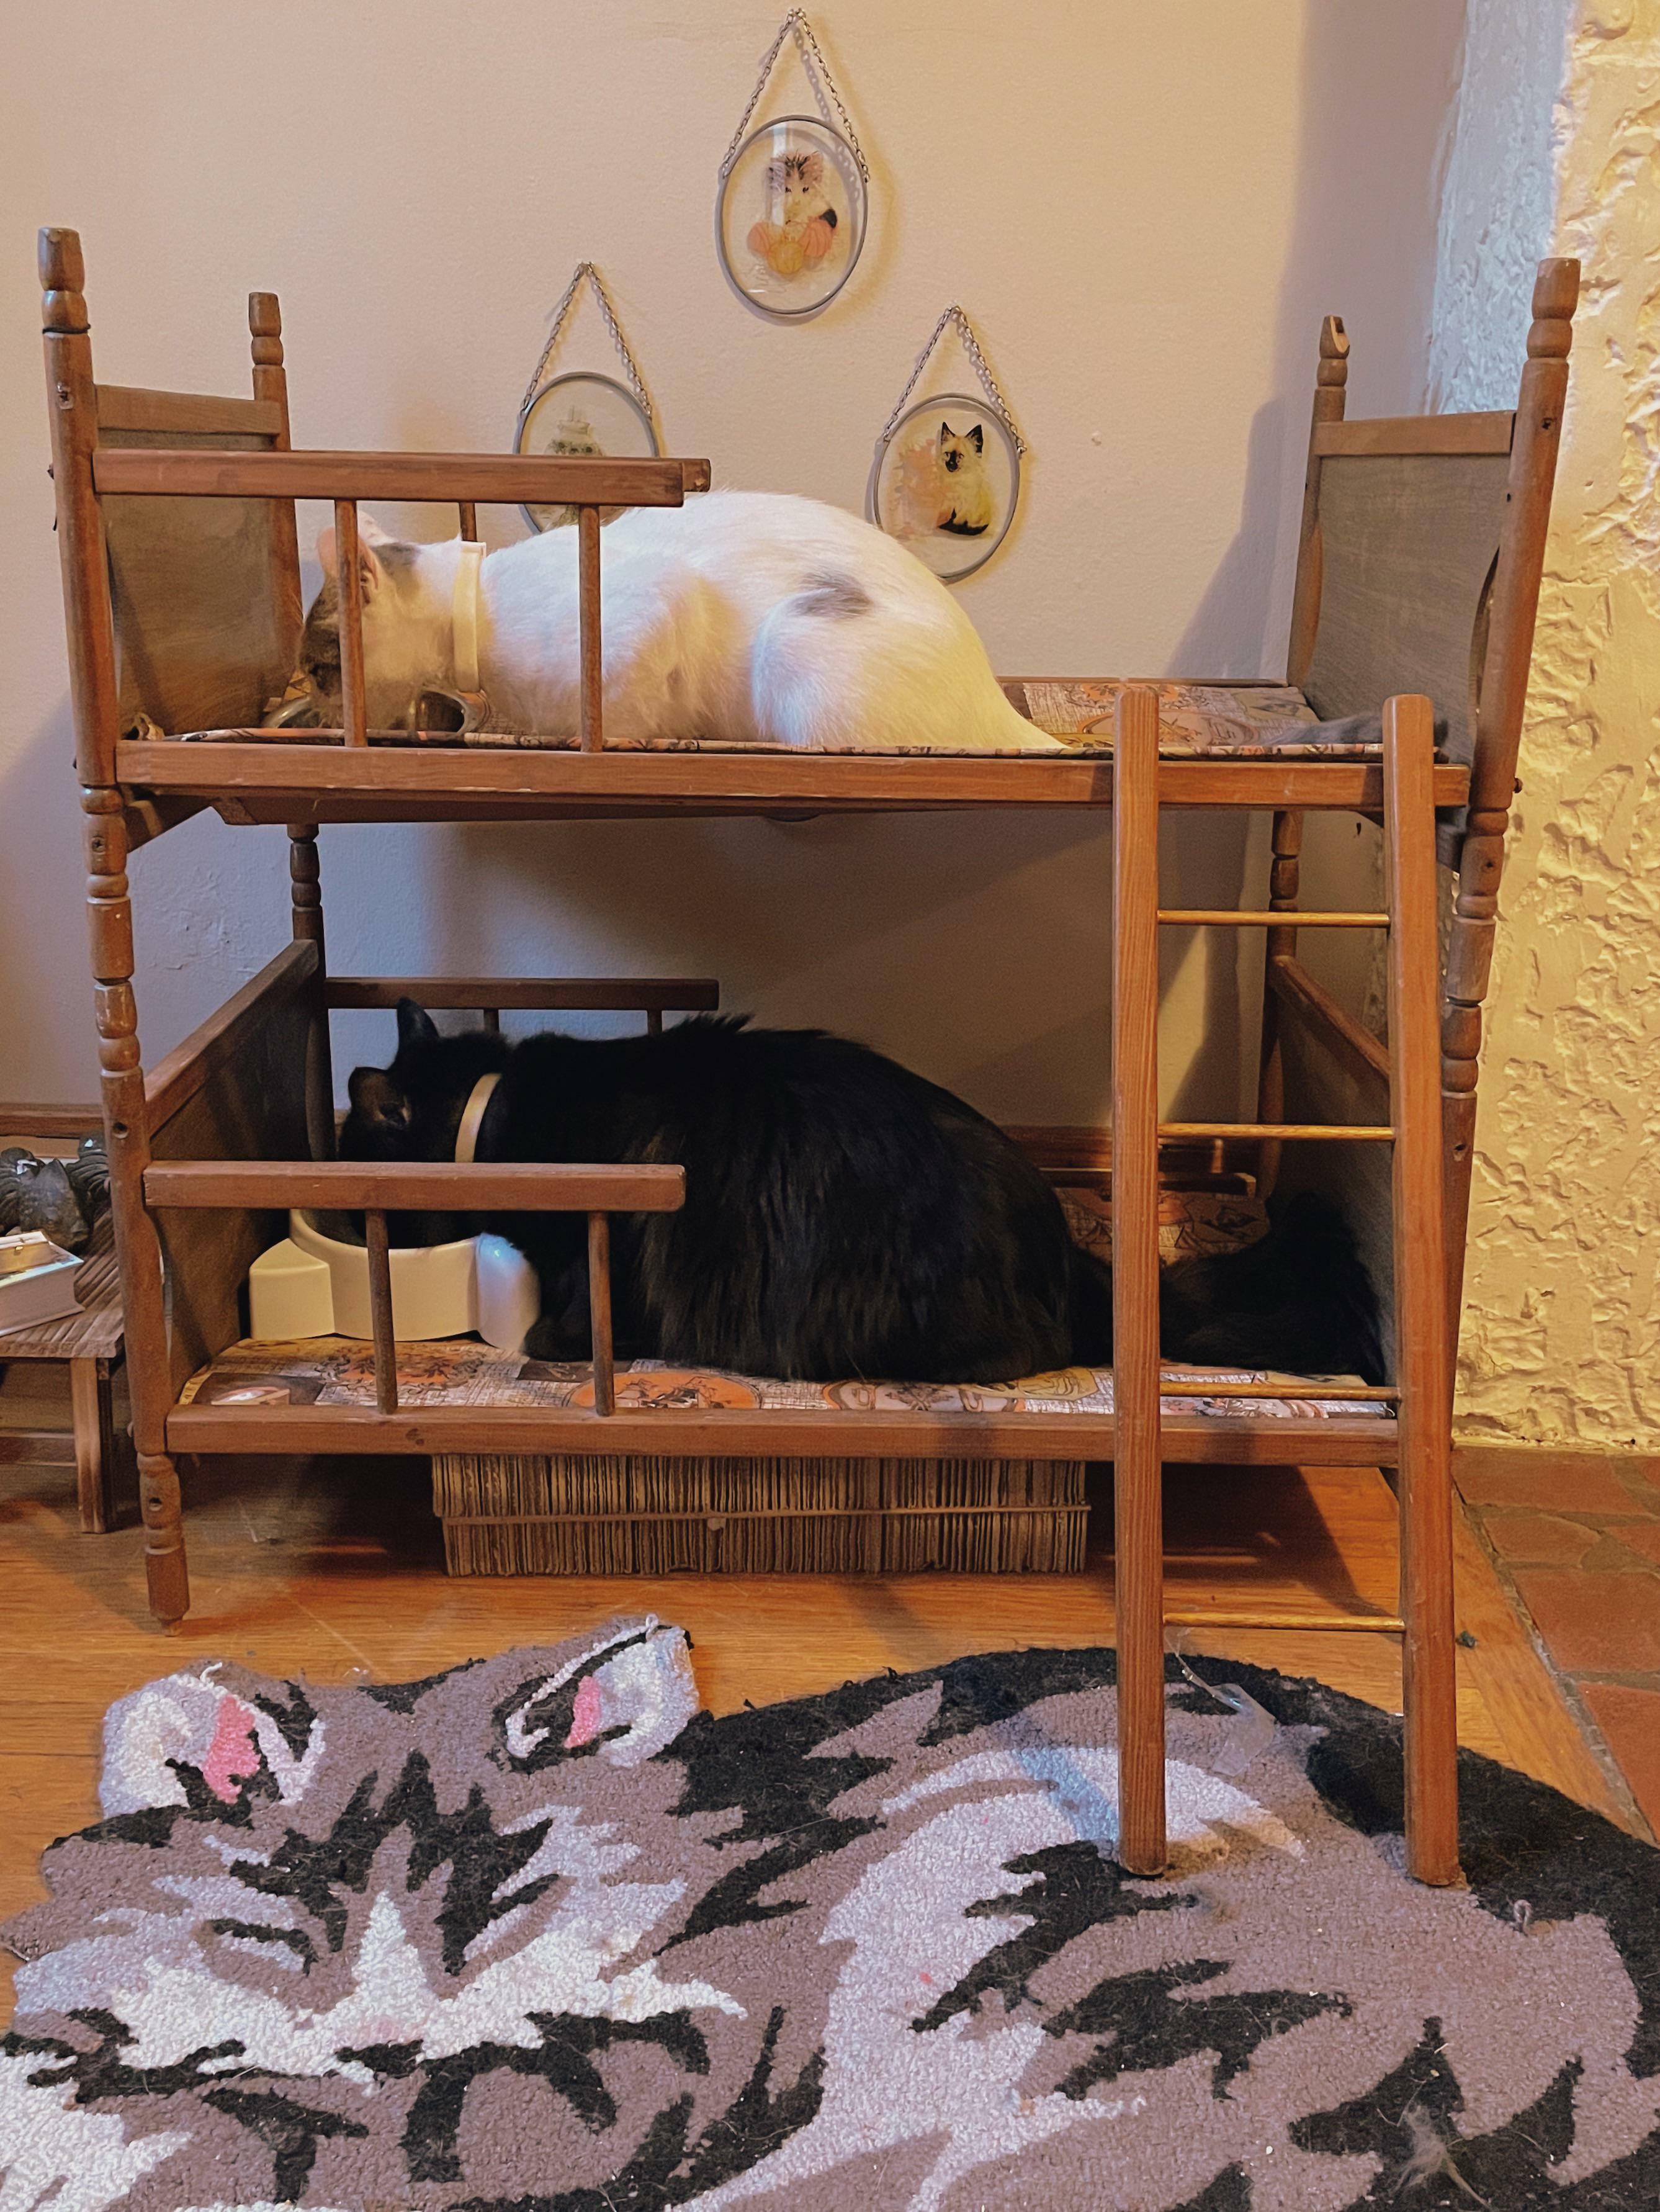 Tulip et Beanie adorent avoir des lits superposés. Cela signifie des soirées pyjama non-stop et des commérages tard dans la nuit.